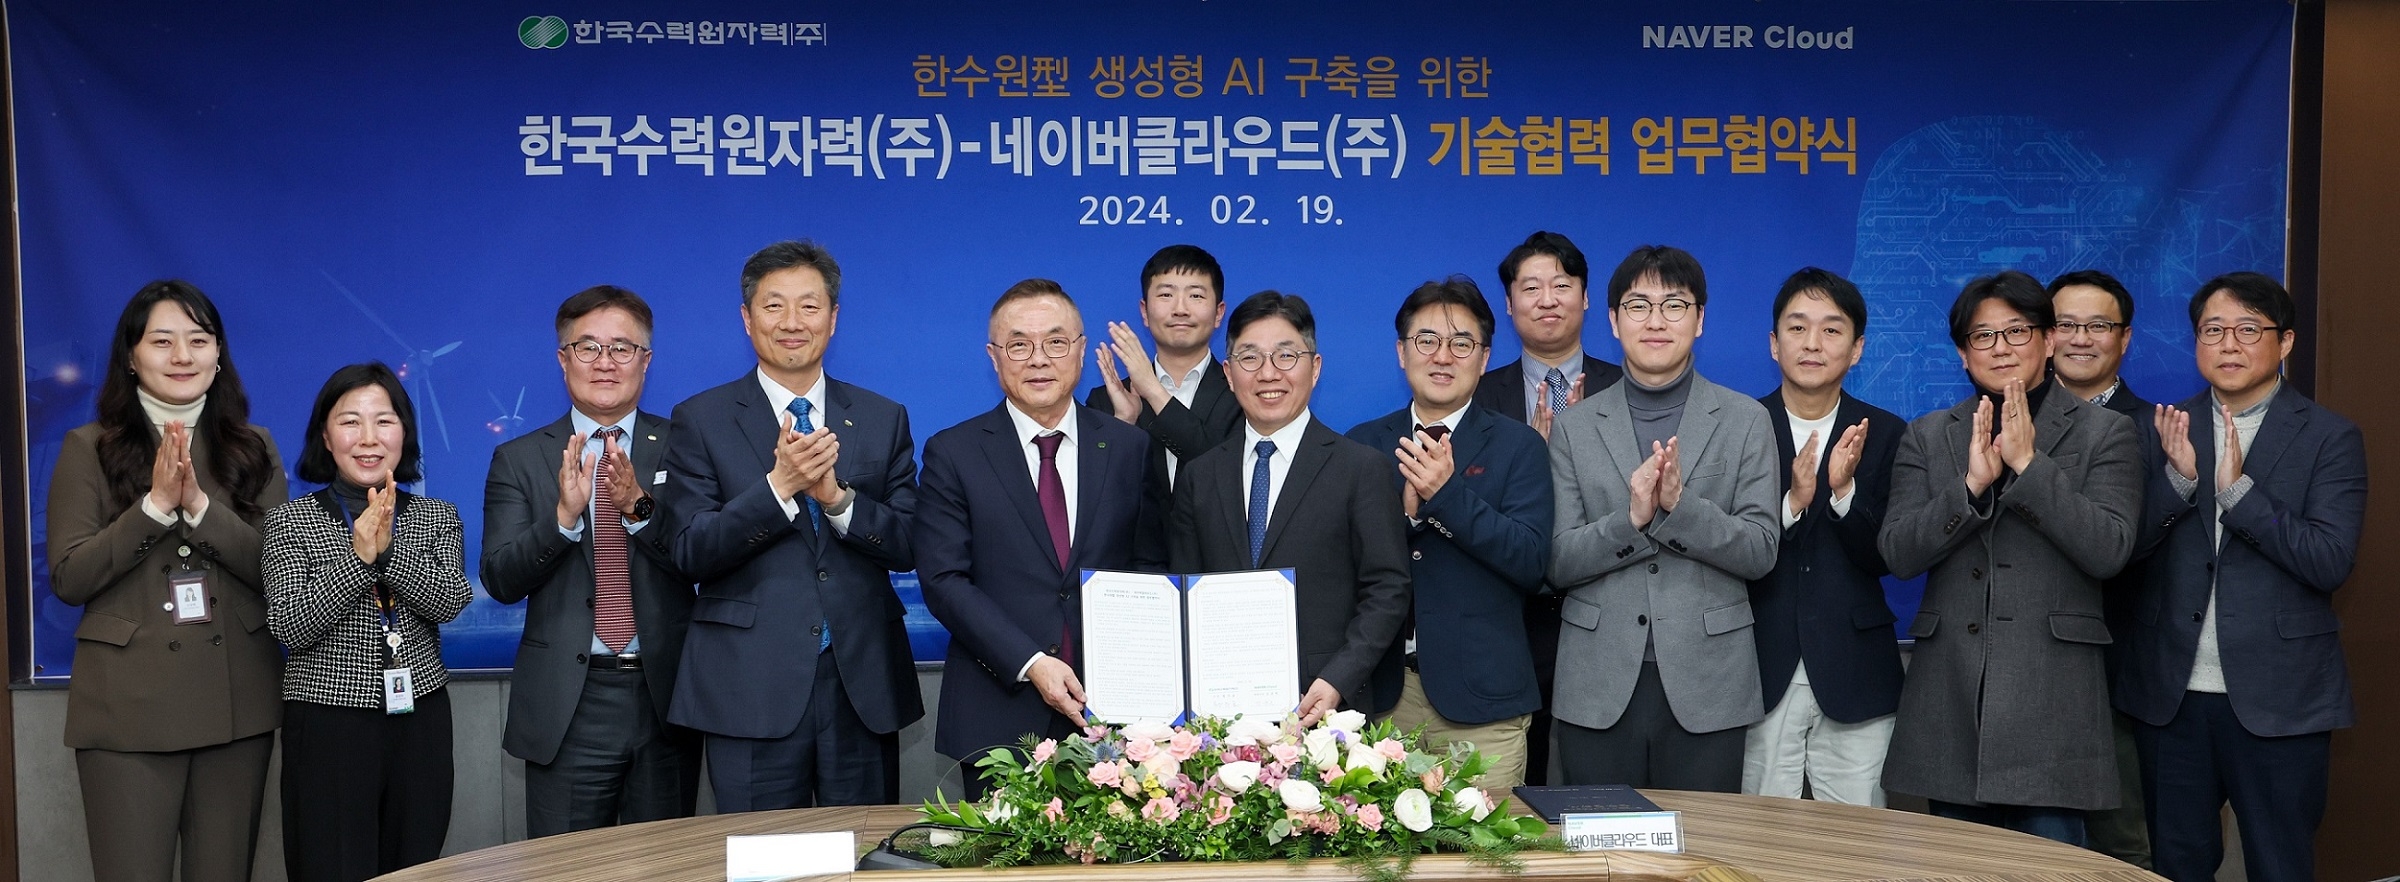 네이버클라우드와 한국수력원자력이 생성형 AI 구축을 위한 업무협약을 19일 체결했다. (가운데 왼쪽부터) 황주호 한국수력원자력 사장, 김유원 네이버클라우드 대표. / 사진제공=네이버클라우드 